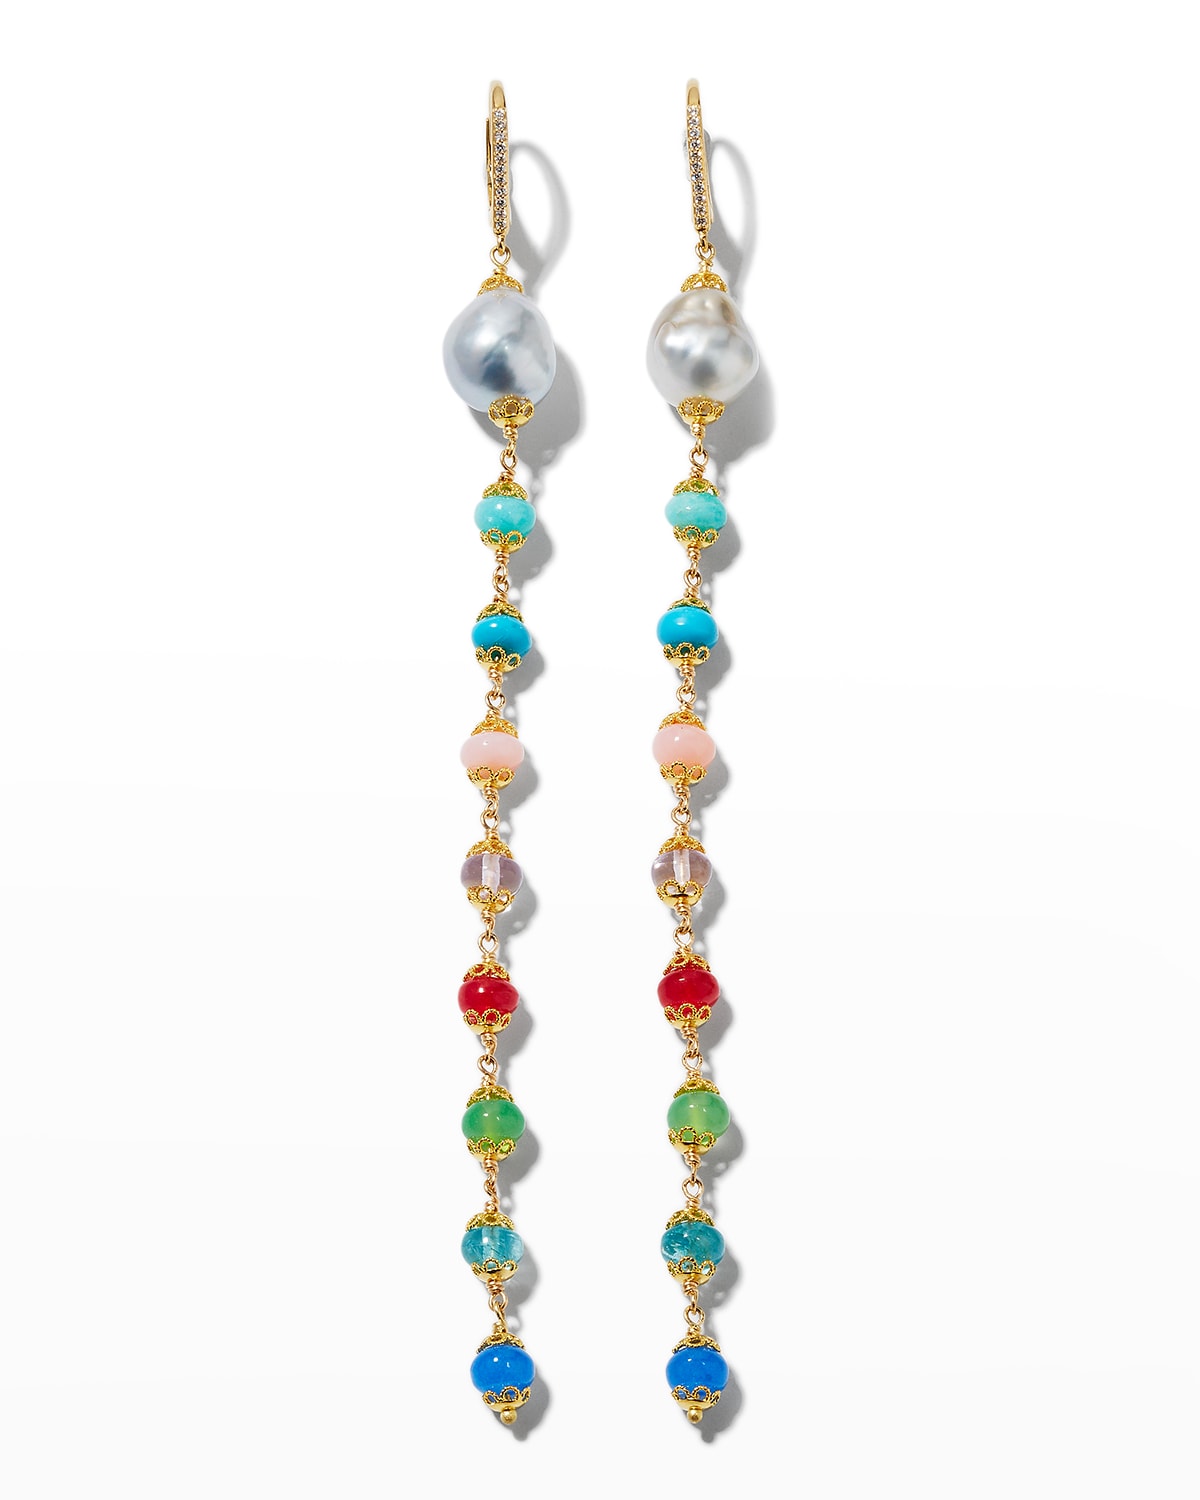 Fern Freeman Jewelry 18k Wire Wrap Line Earrings with Tahitian Pearls